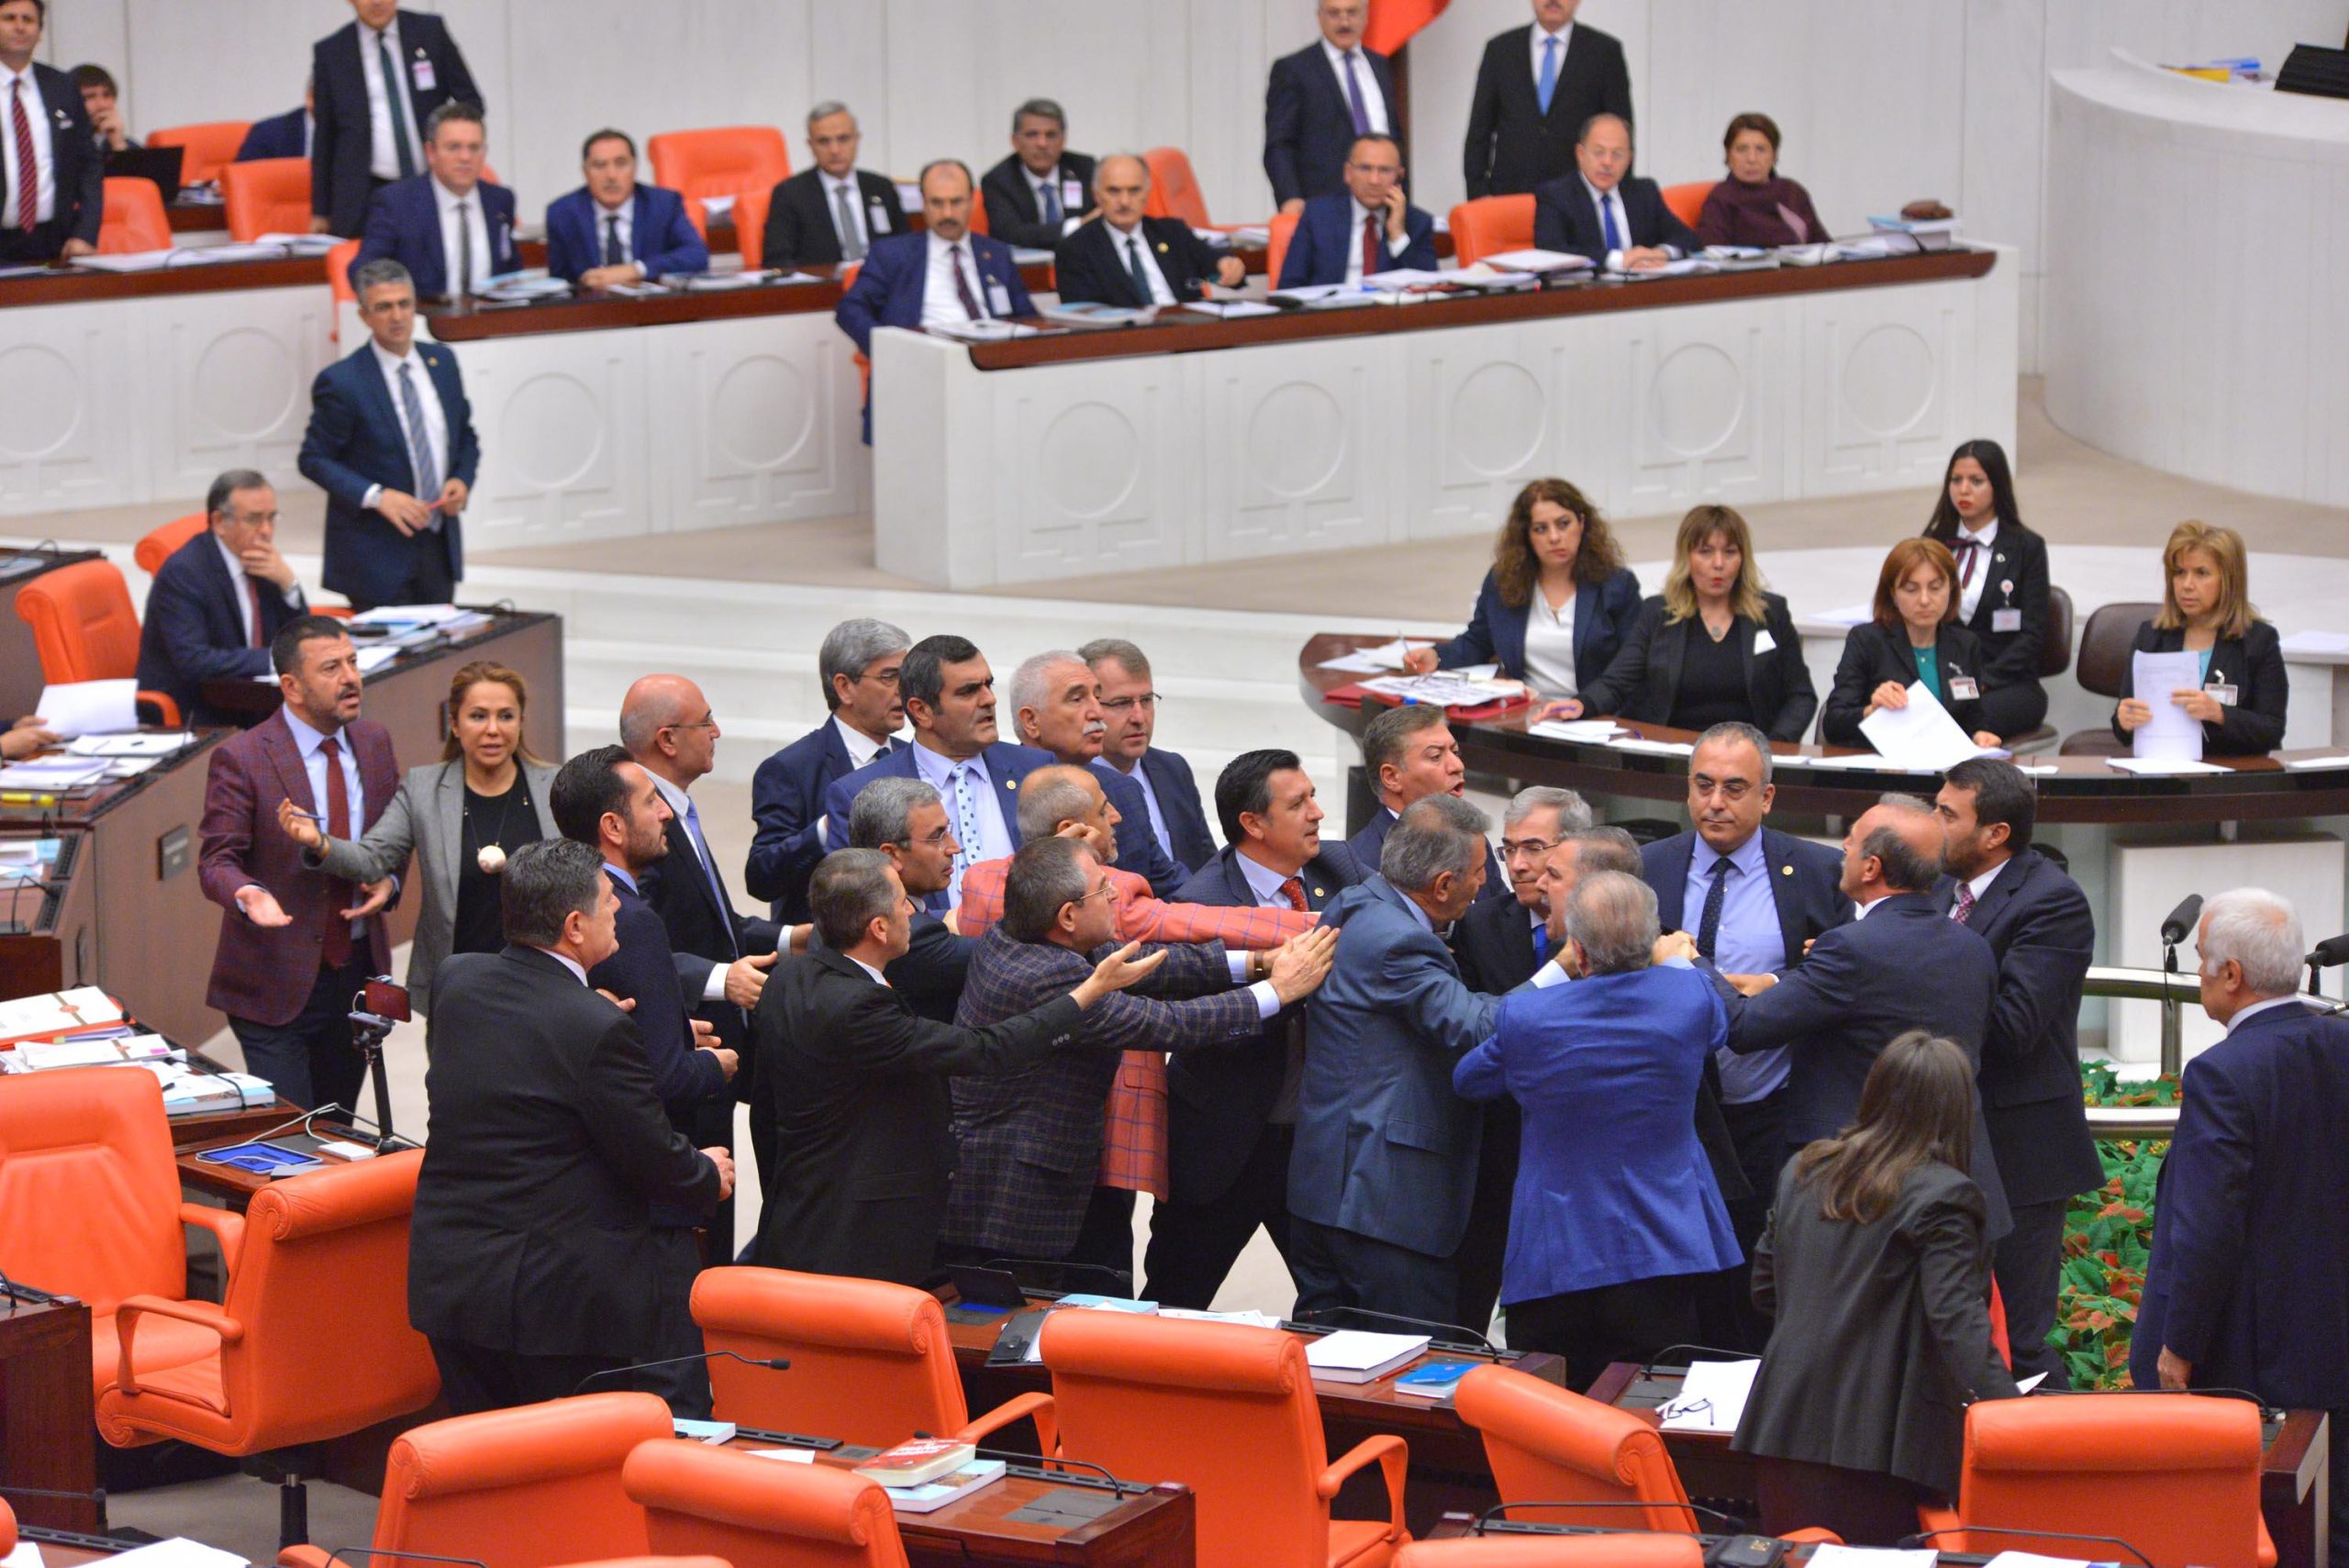 Χάος στην τουρκική βουλή: Πιάστηκαν στα χέρια για το αποτέλεσμα ενός νόμου (βίντεο)